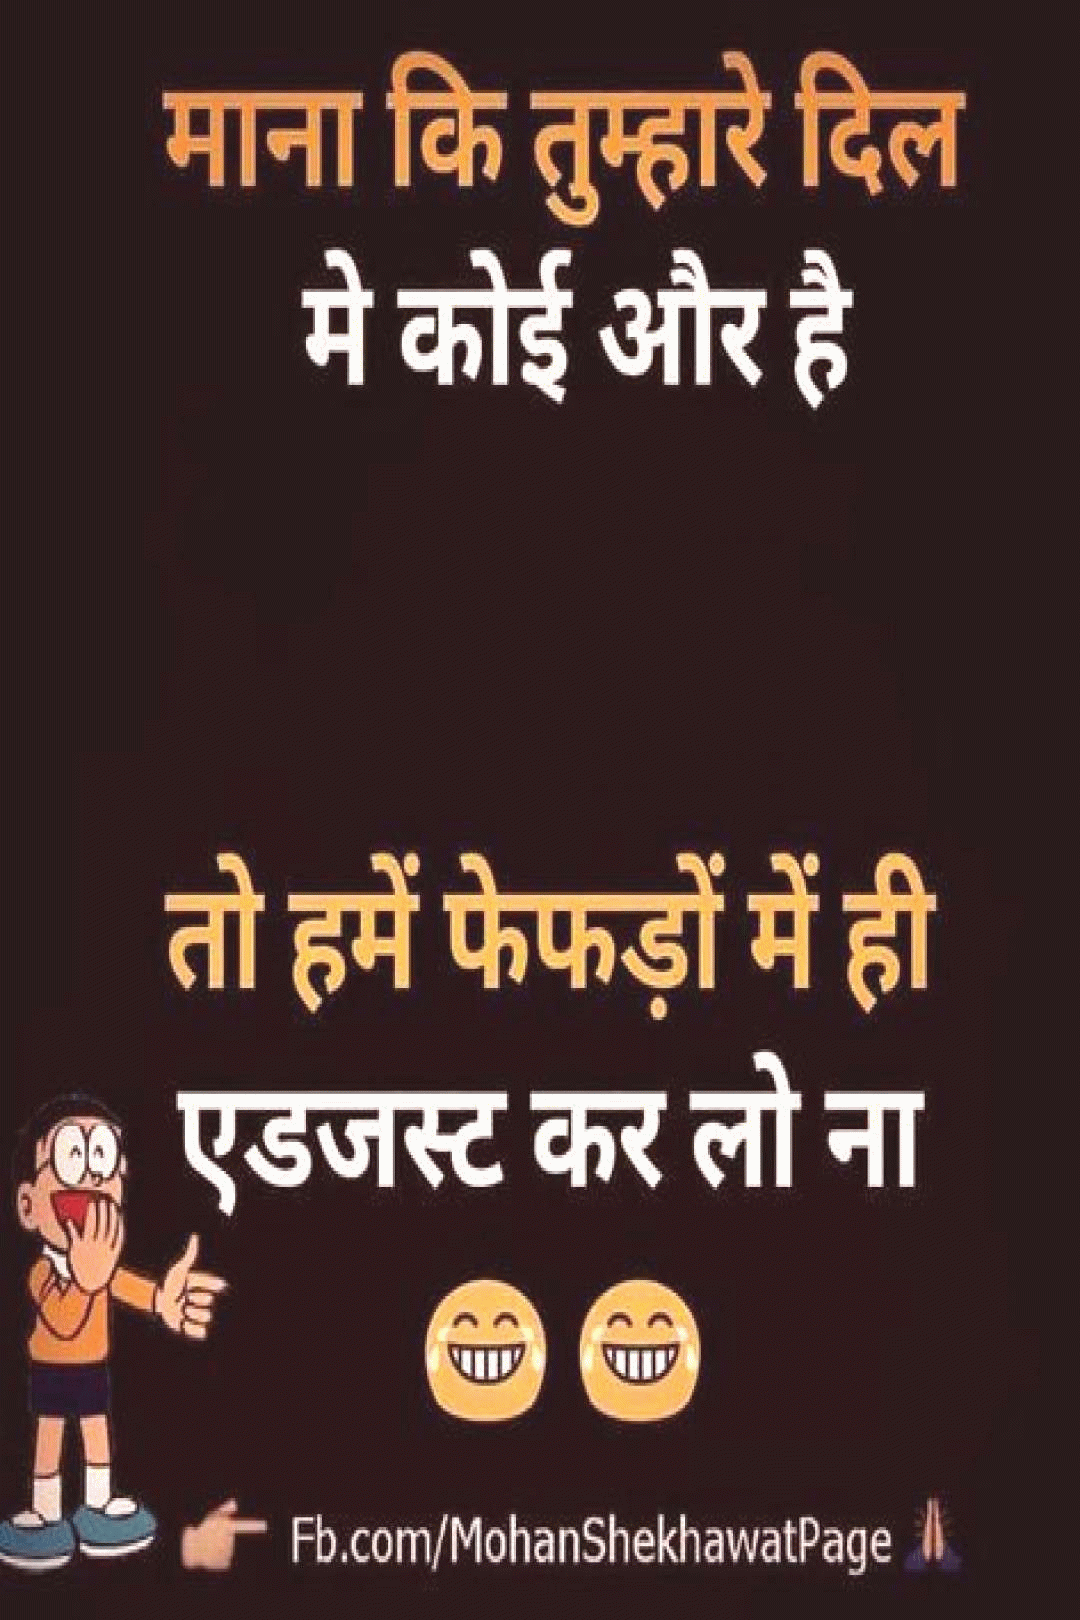 7 jokes in hindi ideas funny school